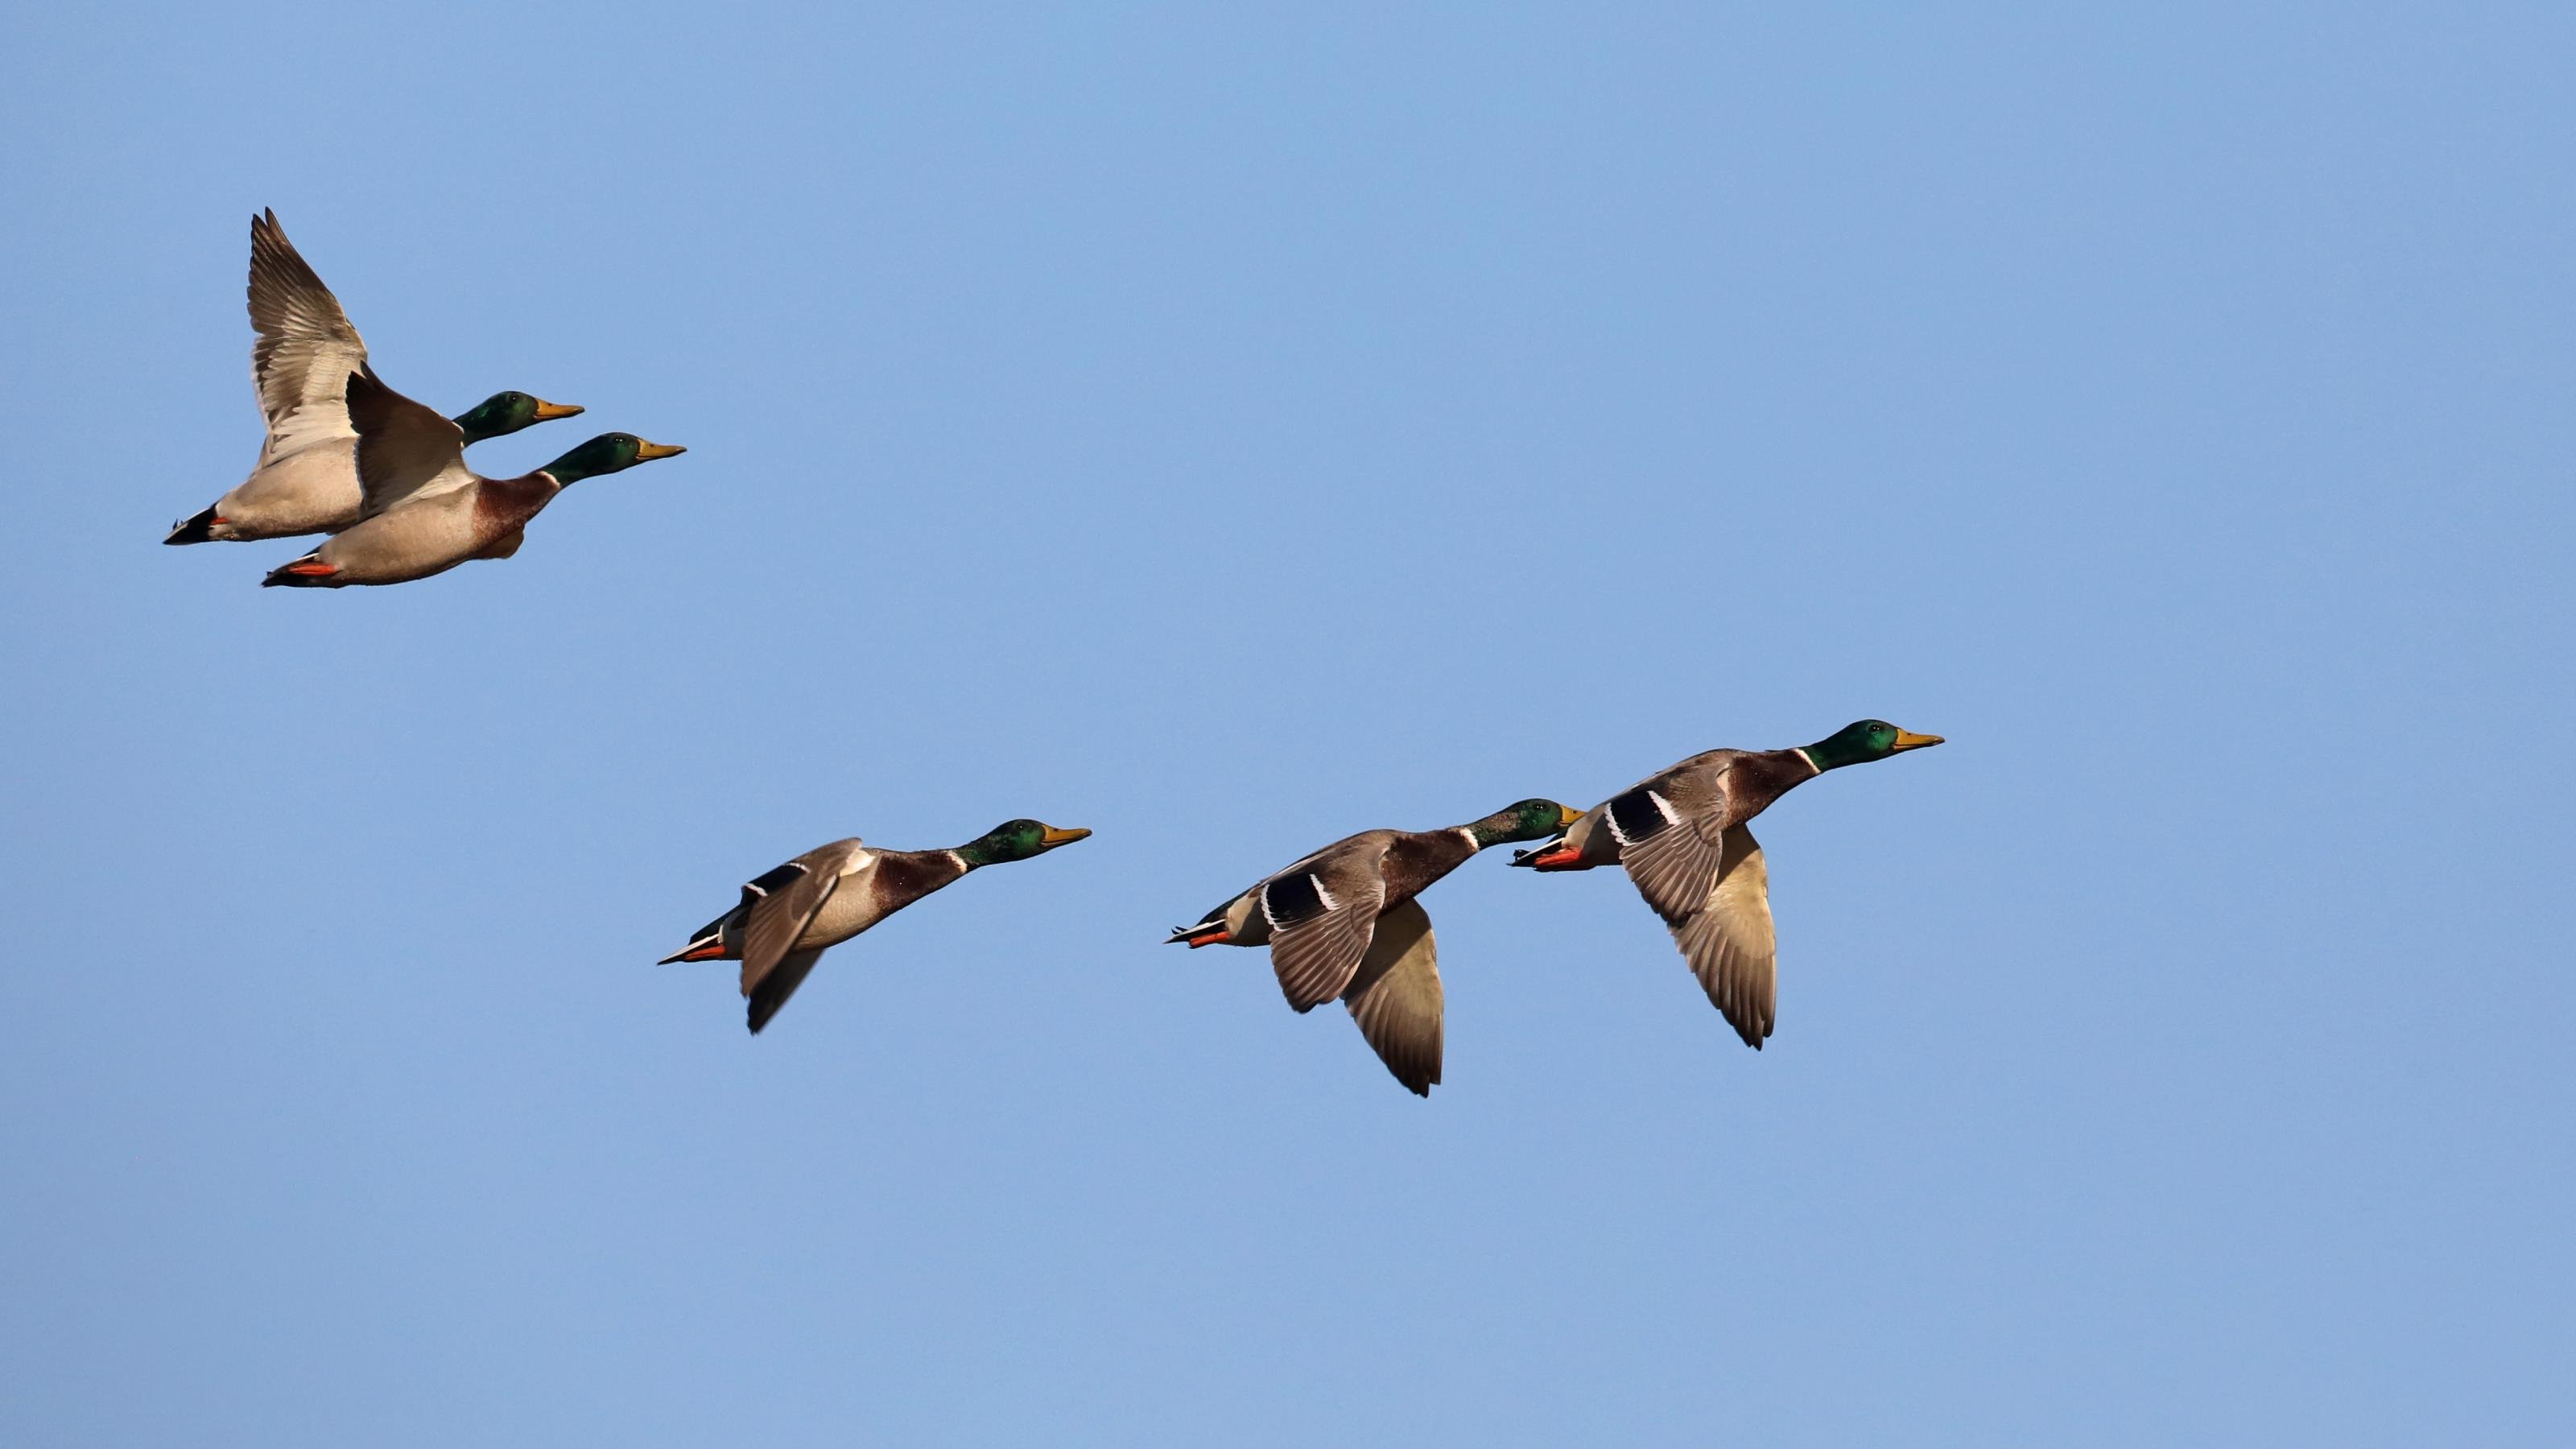 Eine Gruppe aus fünf männlichen Stockenten fliegt von links nach rechts im blauen Himmel